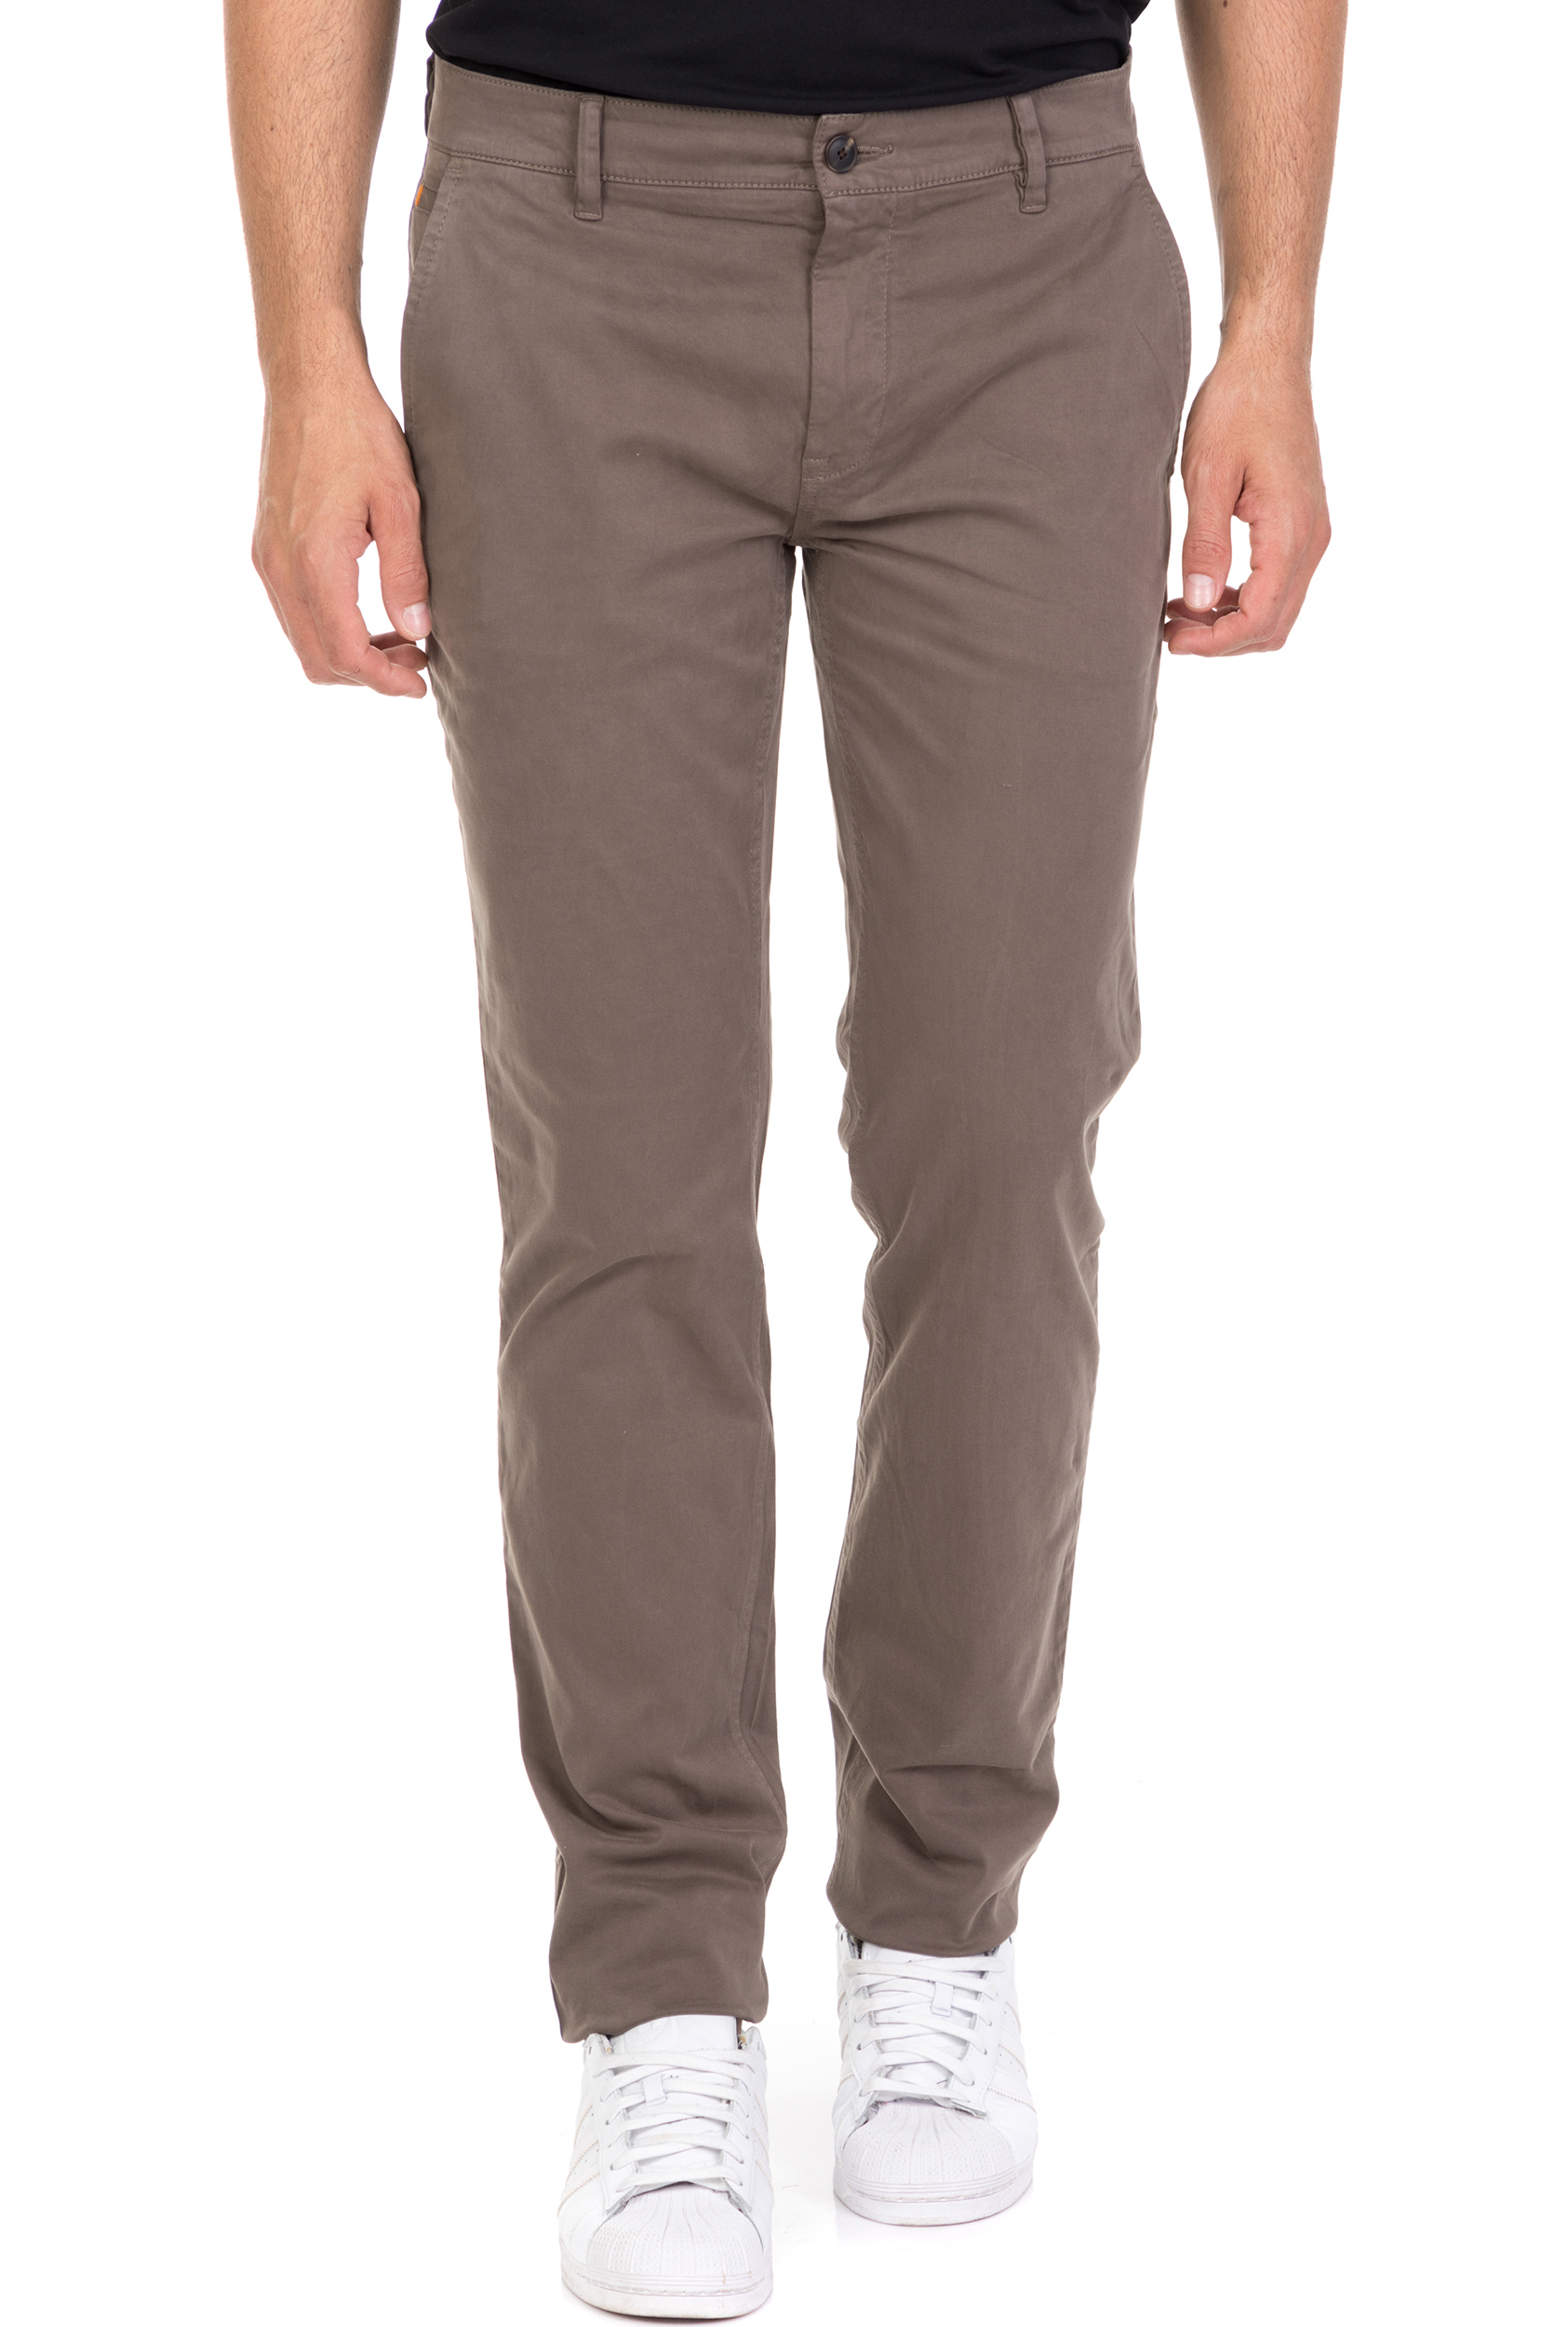 Ανδρικά/Ρούχα/Παντελόνια/Chinos BOSS - Ανδρικό chino παντελόνι BOSS Slim καφέ